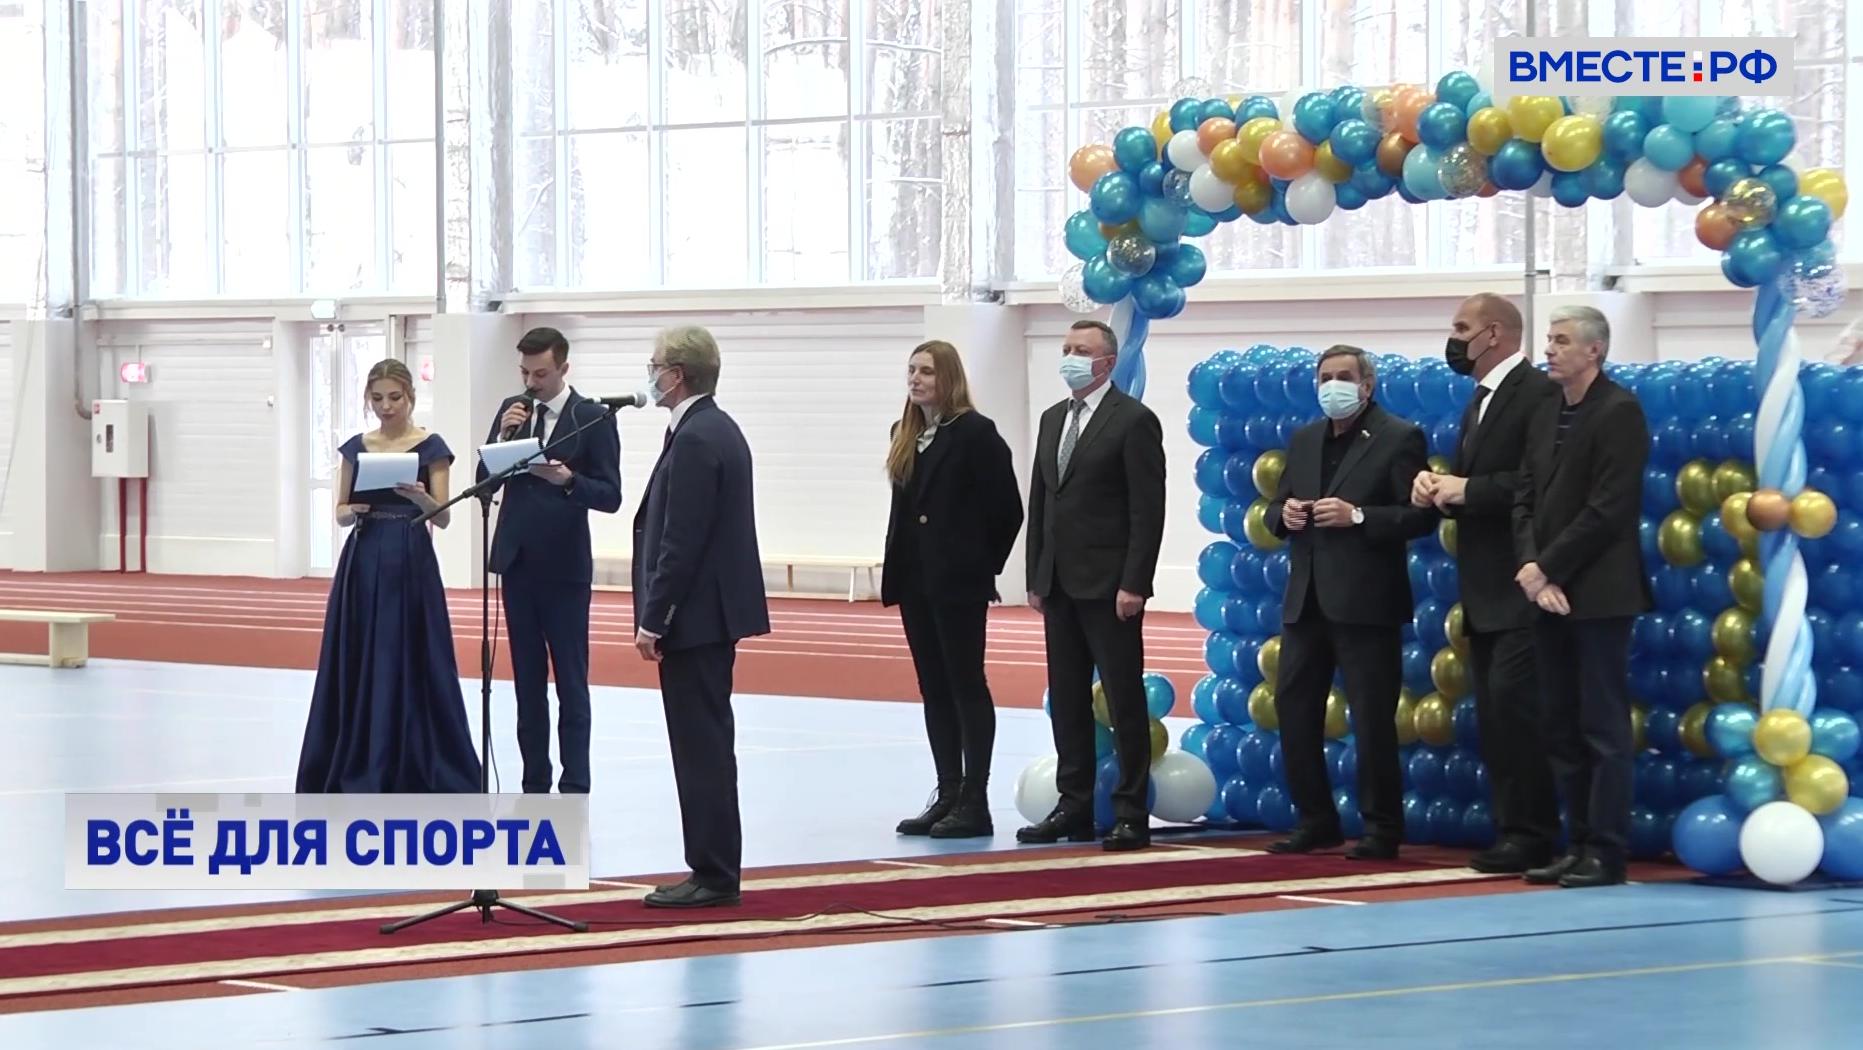 Праздник для всей легкоатлетической России: в Новосибирской области открыли спорткомплекс